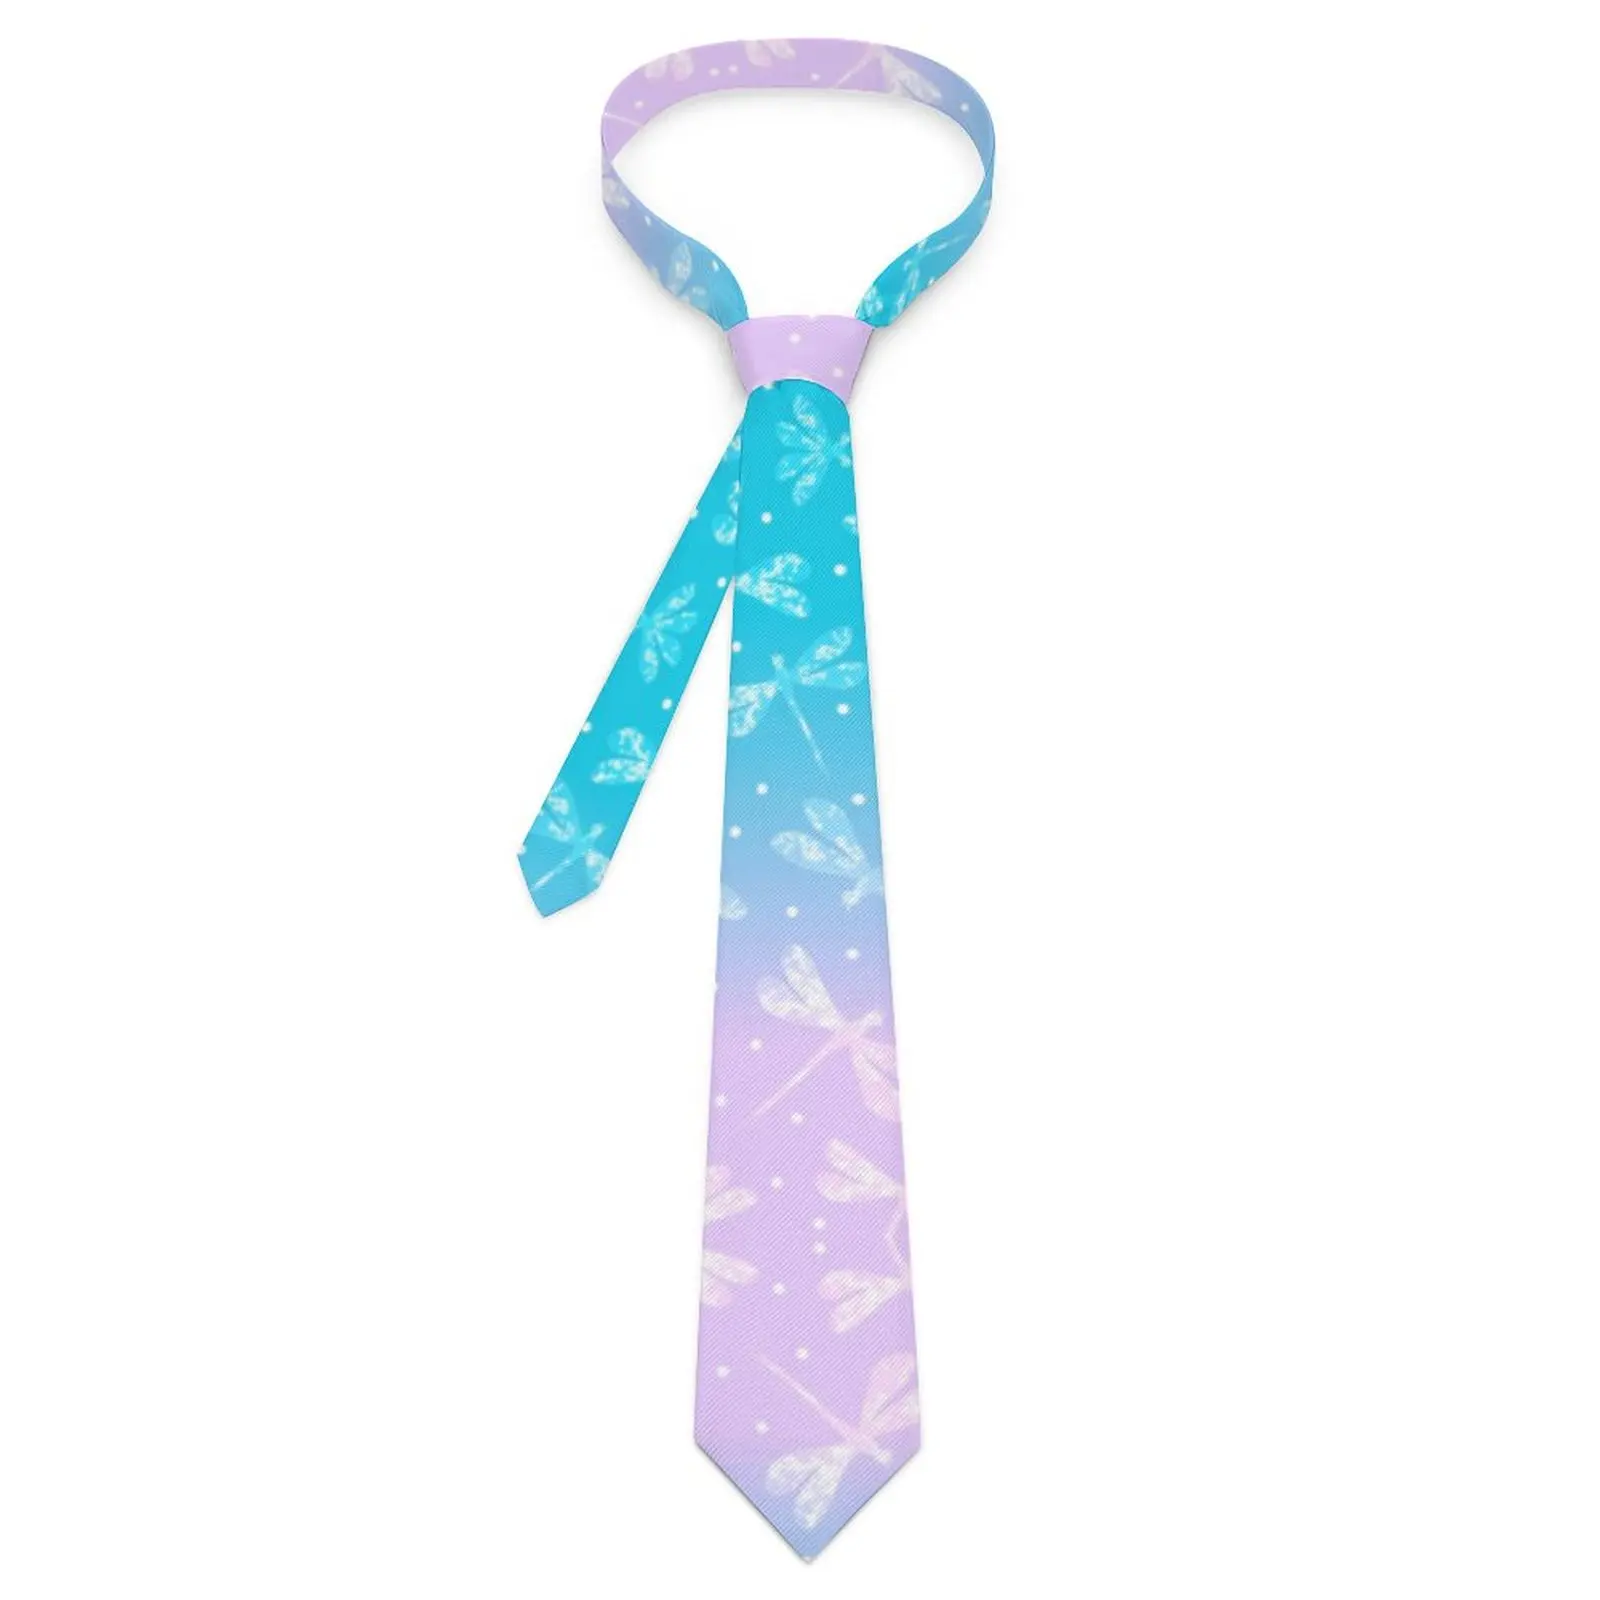 

Men's Tie Pink Aqua Ombre Neck Ties Dragonflies Print Elegant Collar Tie Custom Daily Wear Party Quality Necktie Accessories